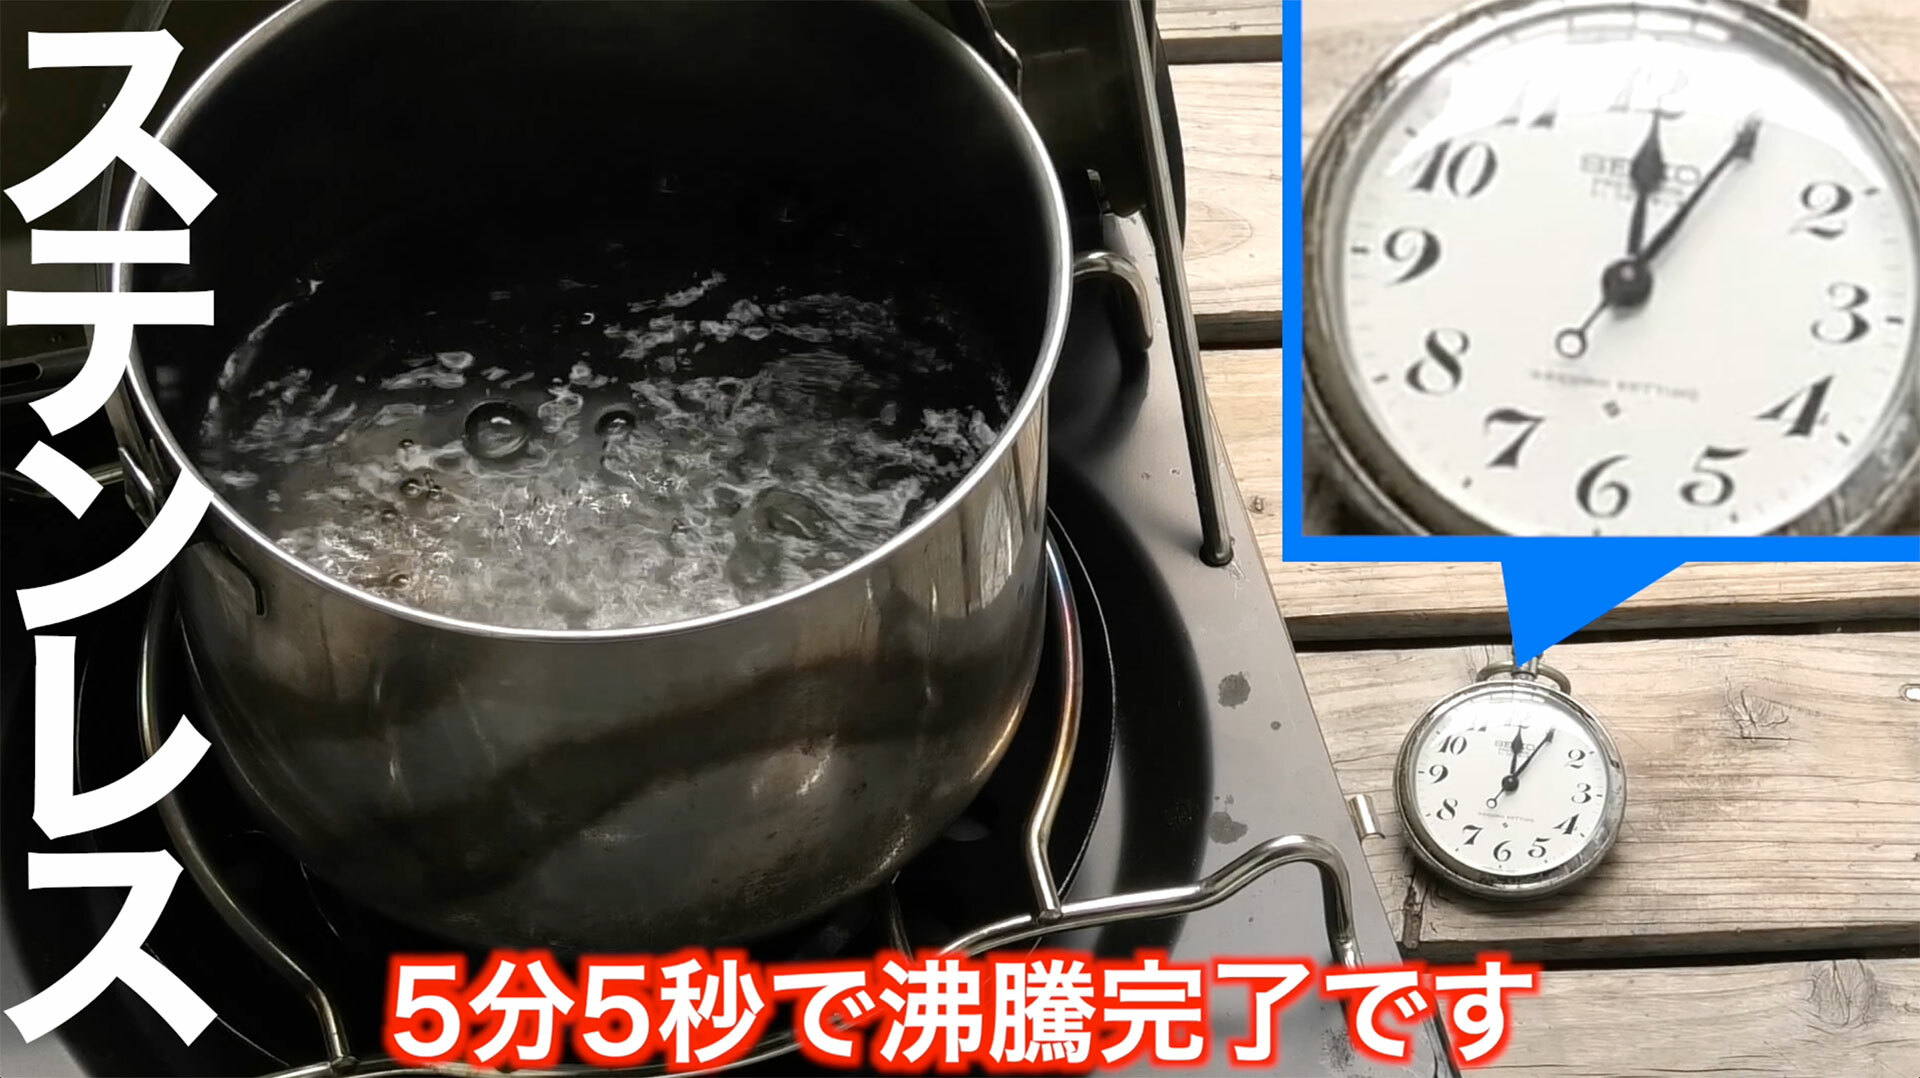 ステンレス製のクッカーは4分50秒で沸騰開始、5分5秒で煮沸状態